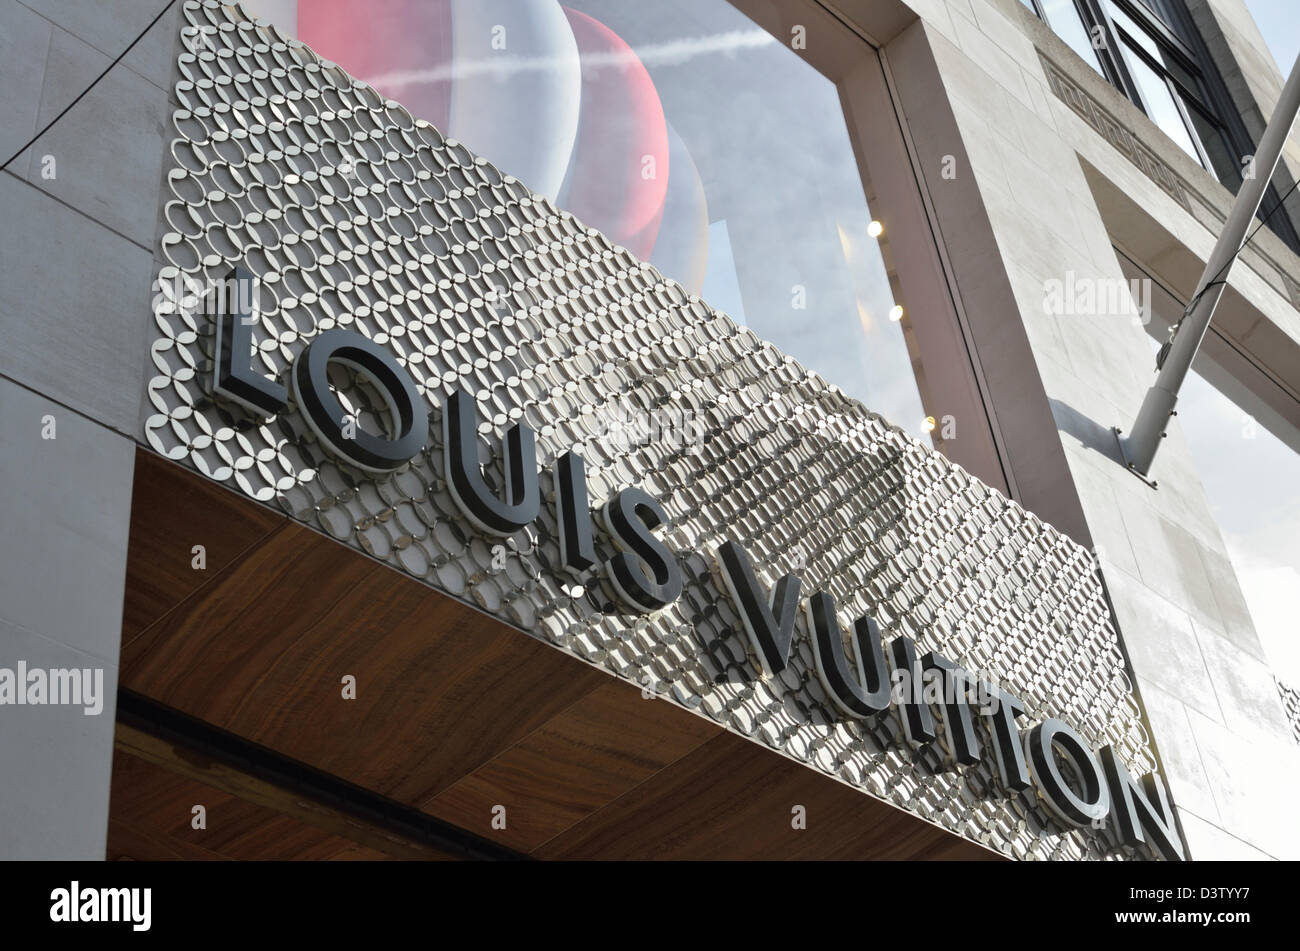 Photos at Louis Vuitton - Sandton City Shopping Centre, Shop 26